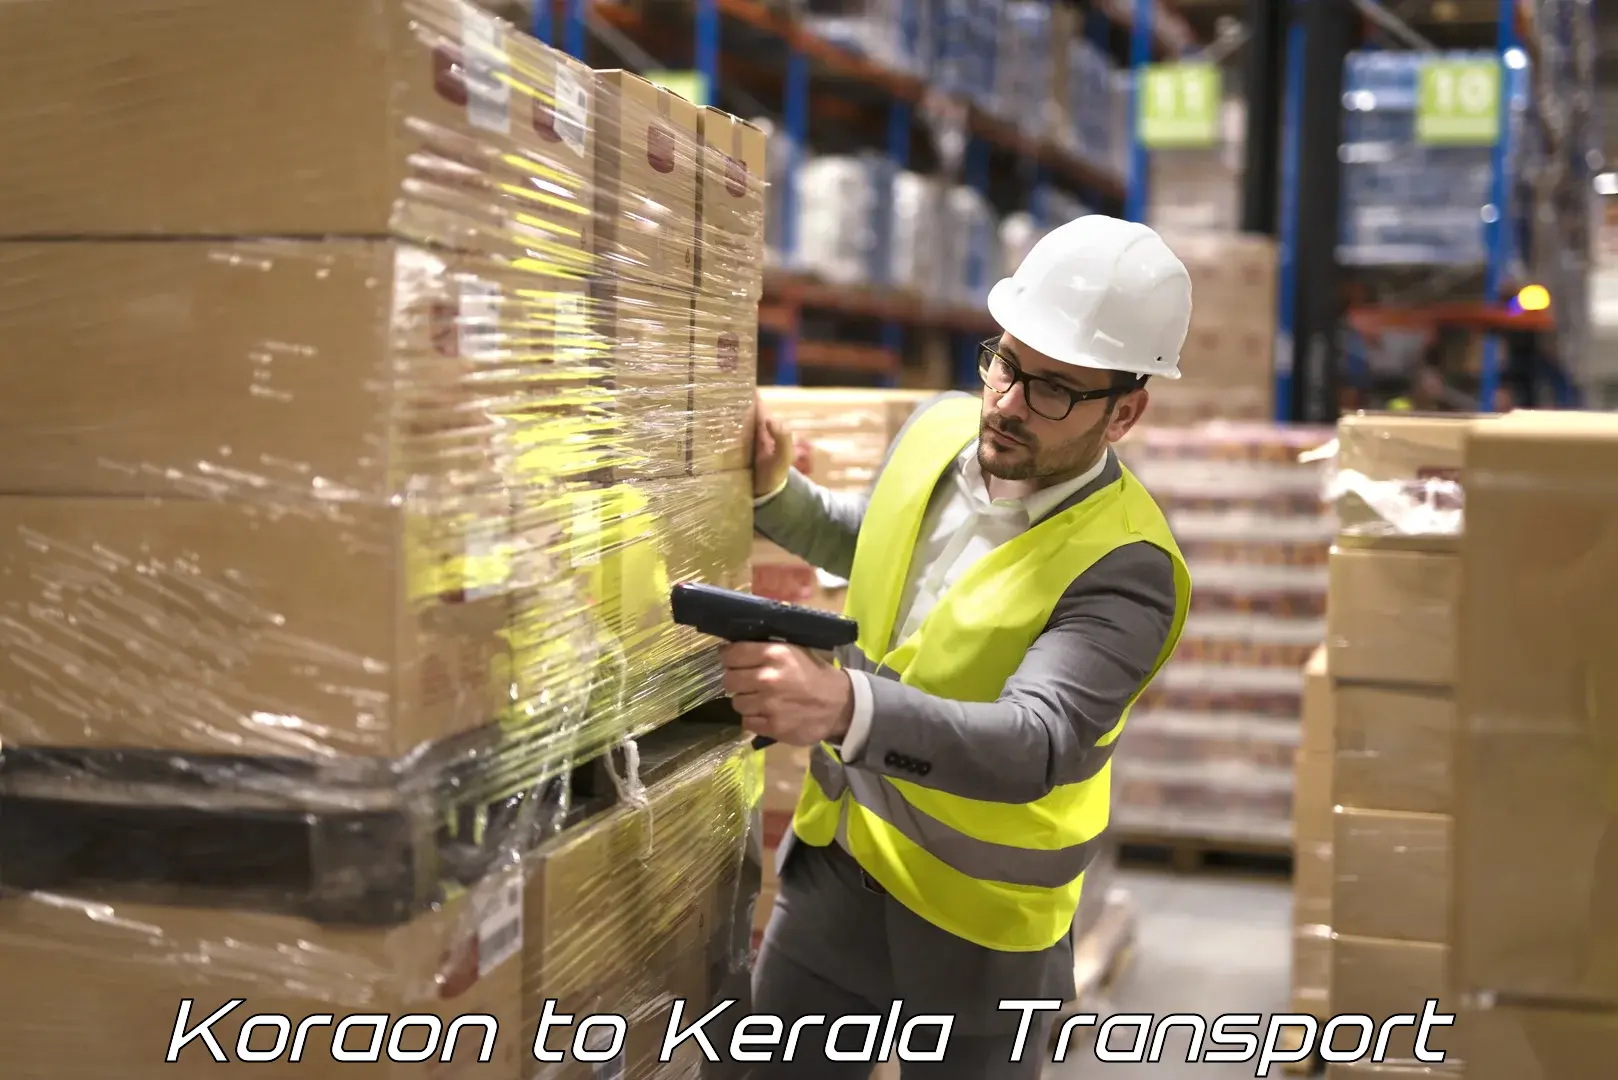 Online transport booking Koraon to Kallikkad